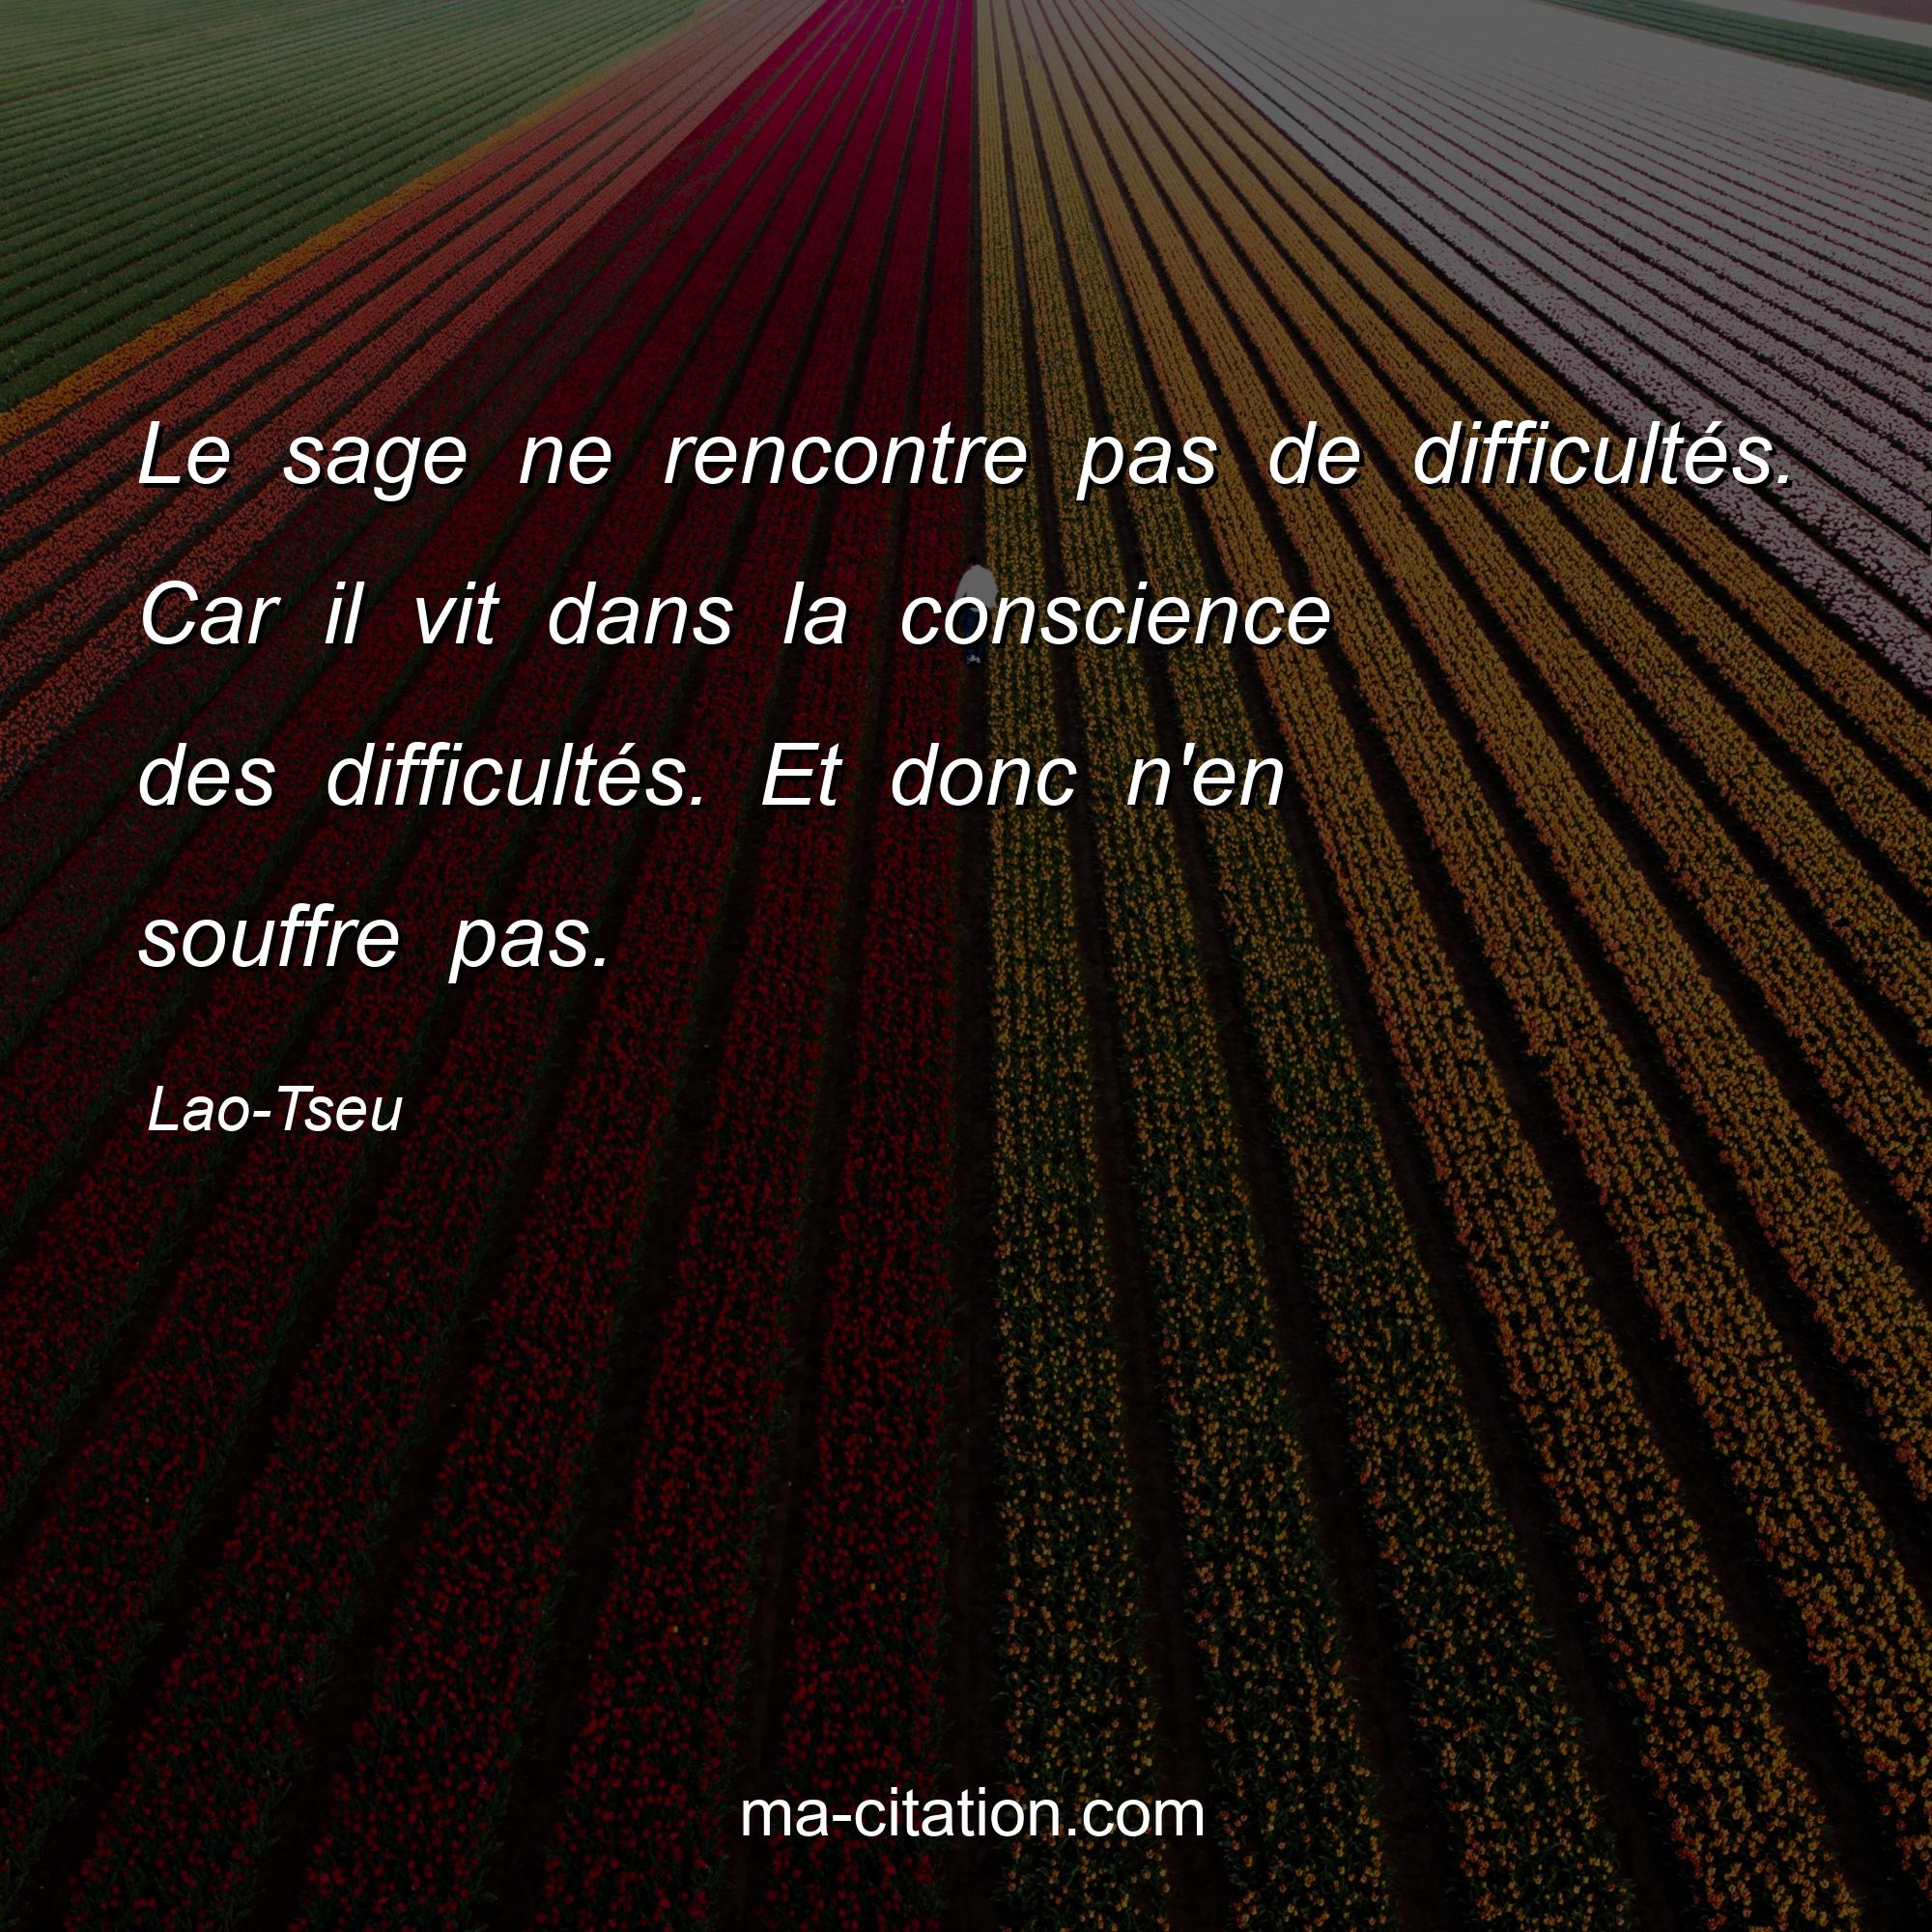 Lao-Tseu : Le sage ne rencontre pas de difficultés. Car il vit dans la conscience des difficultés. Et donc n'en souffre pas.